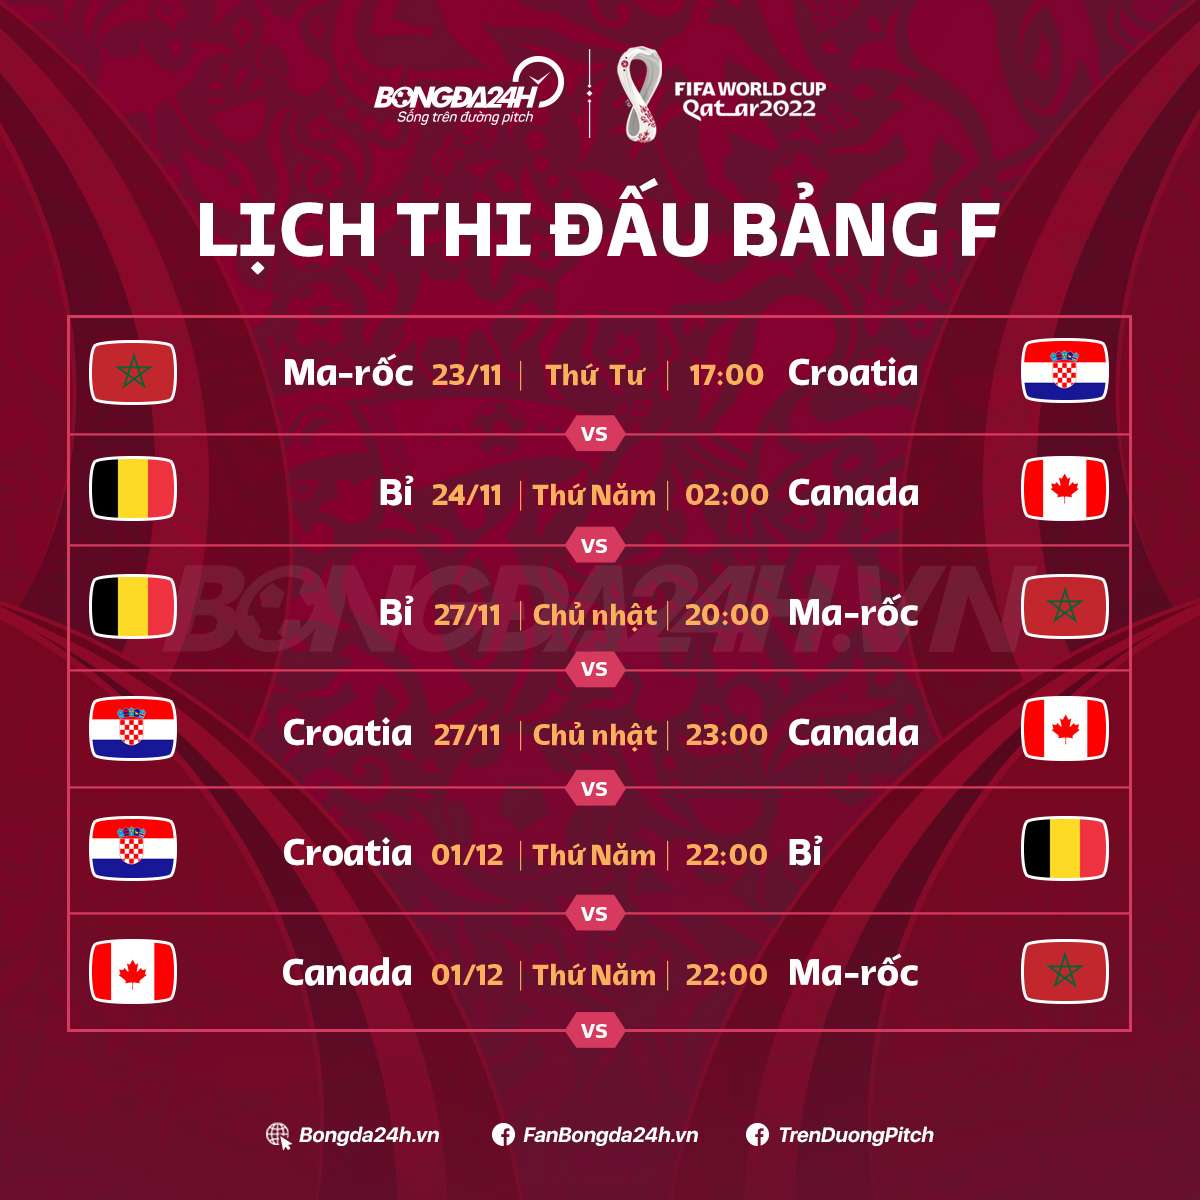 Lich thi dau bang F World Cup 2022